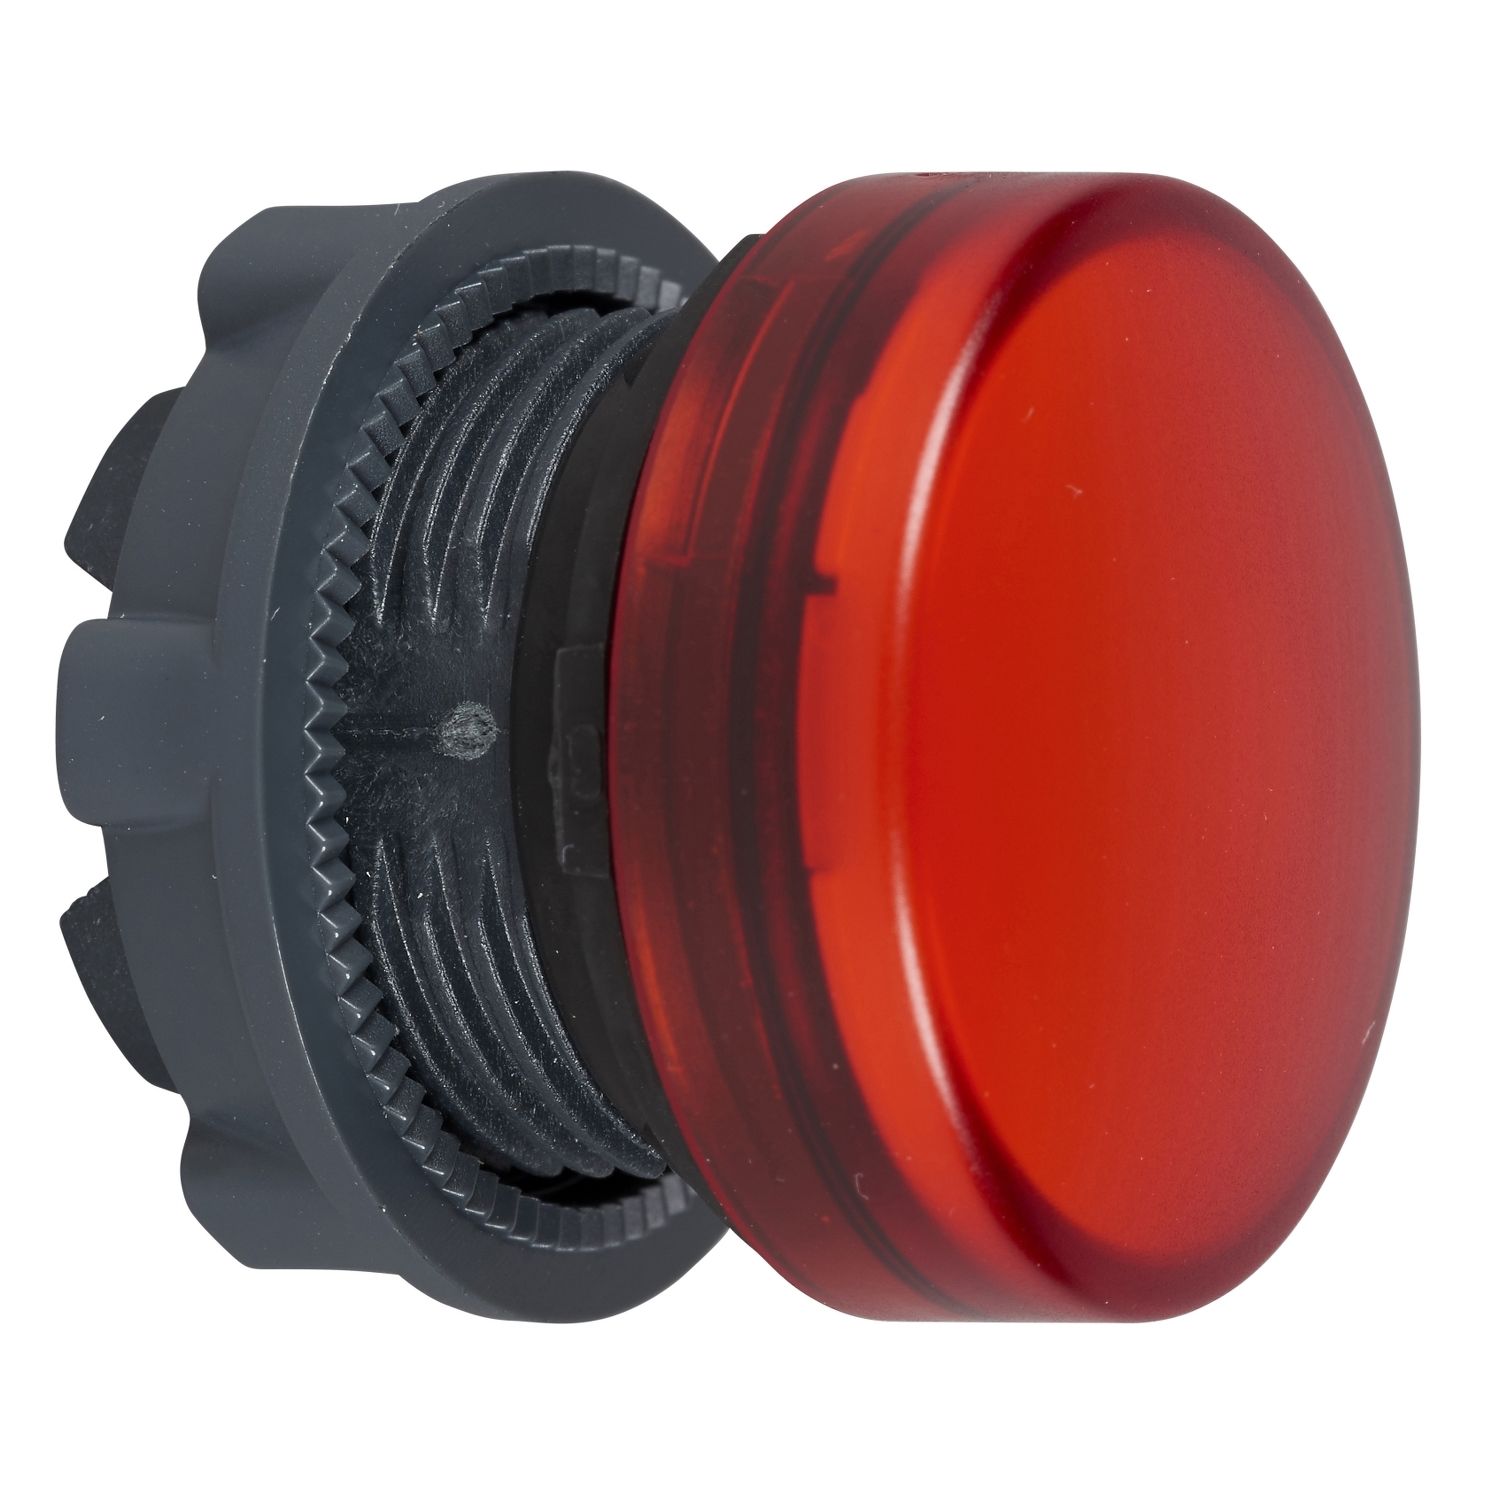 ZB5AV04 Head for pilot light, Harmony XB5, metal, red, 22mm, plain lens for BA9s bulb